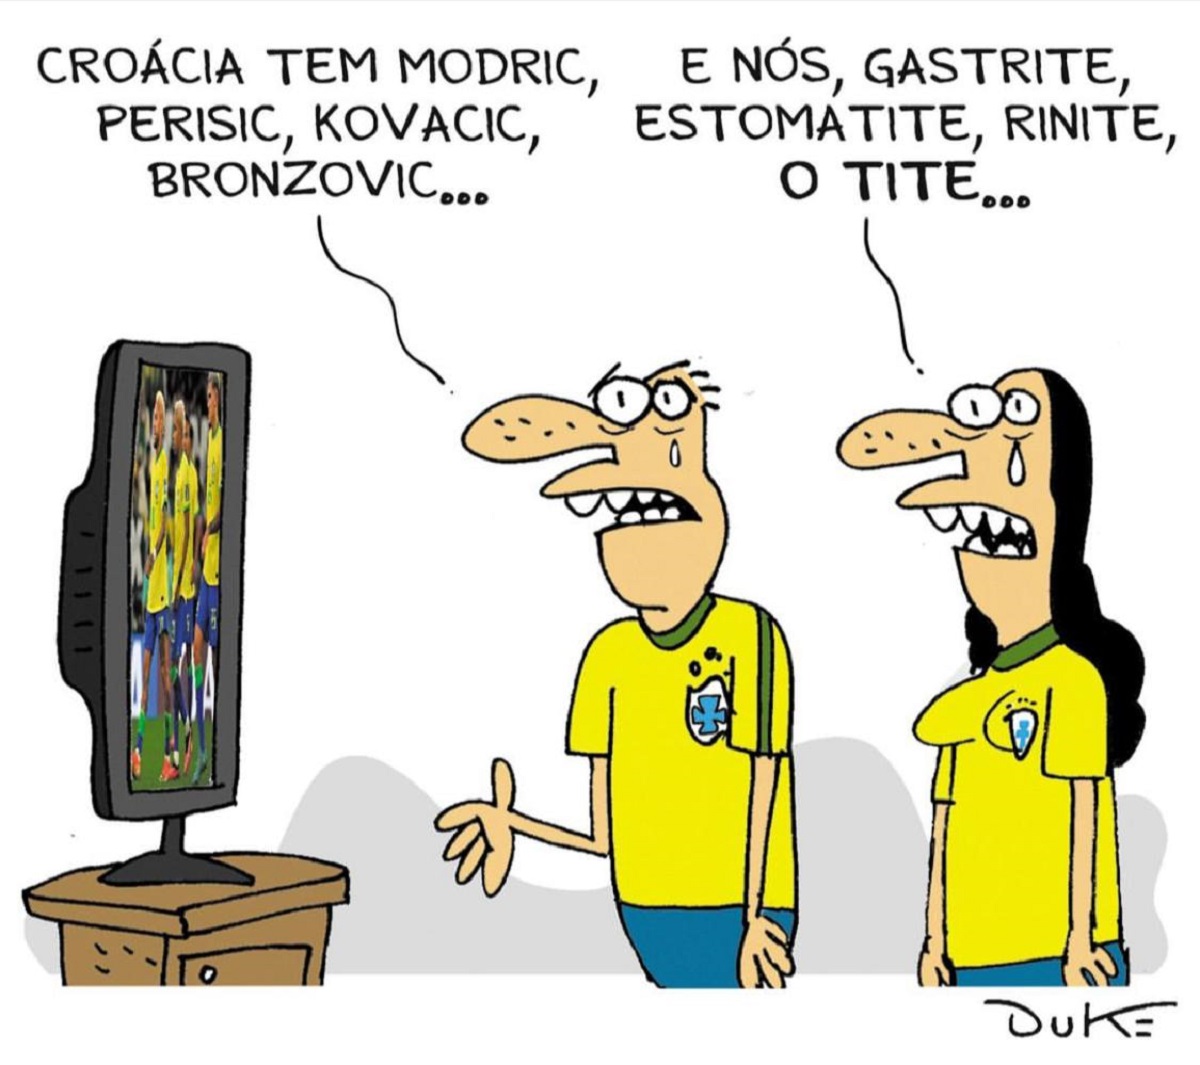 Memes tomam conta da internet após eliminação do Brasil na Copa - PP